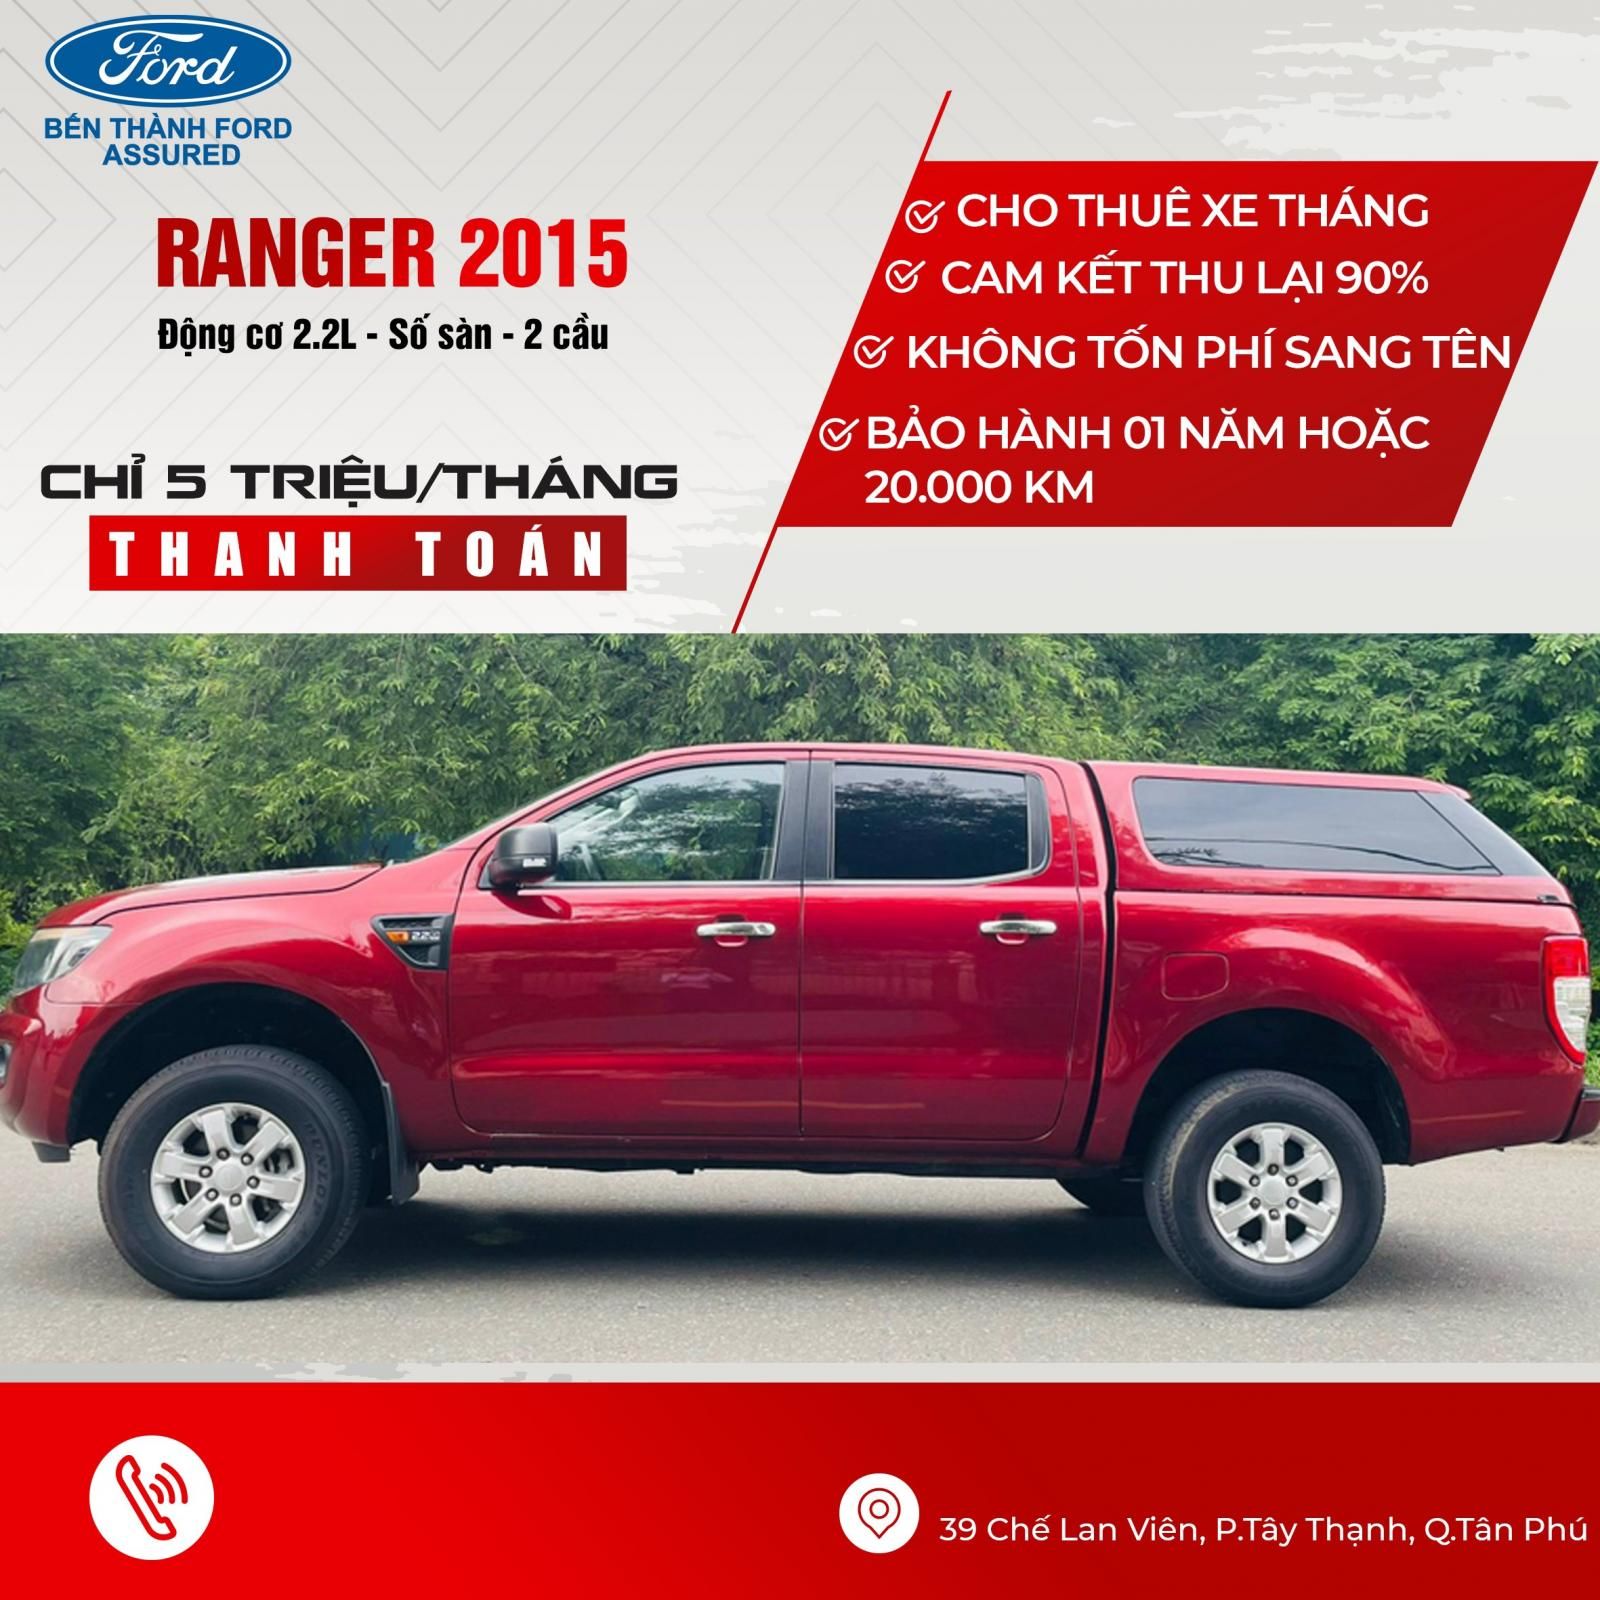 Ford Ranger 2015 - Phụ kiện đi kèm: Nắp thùng cao, dán phim, ghế da, lót sàn, bọc trần